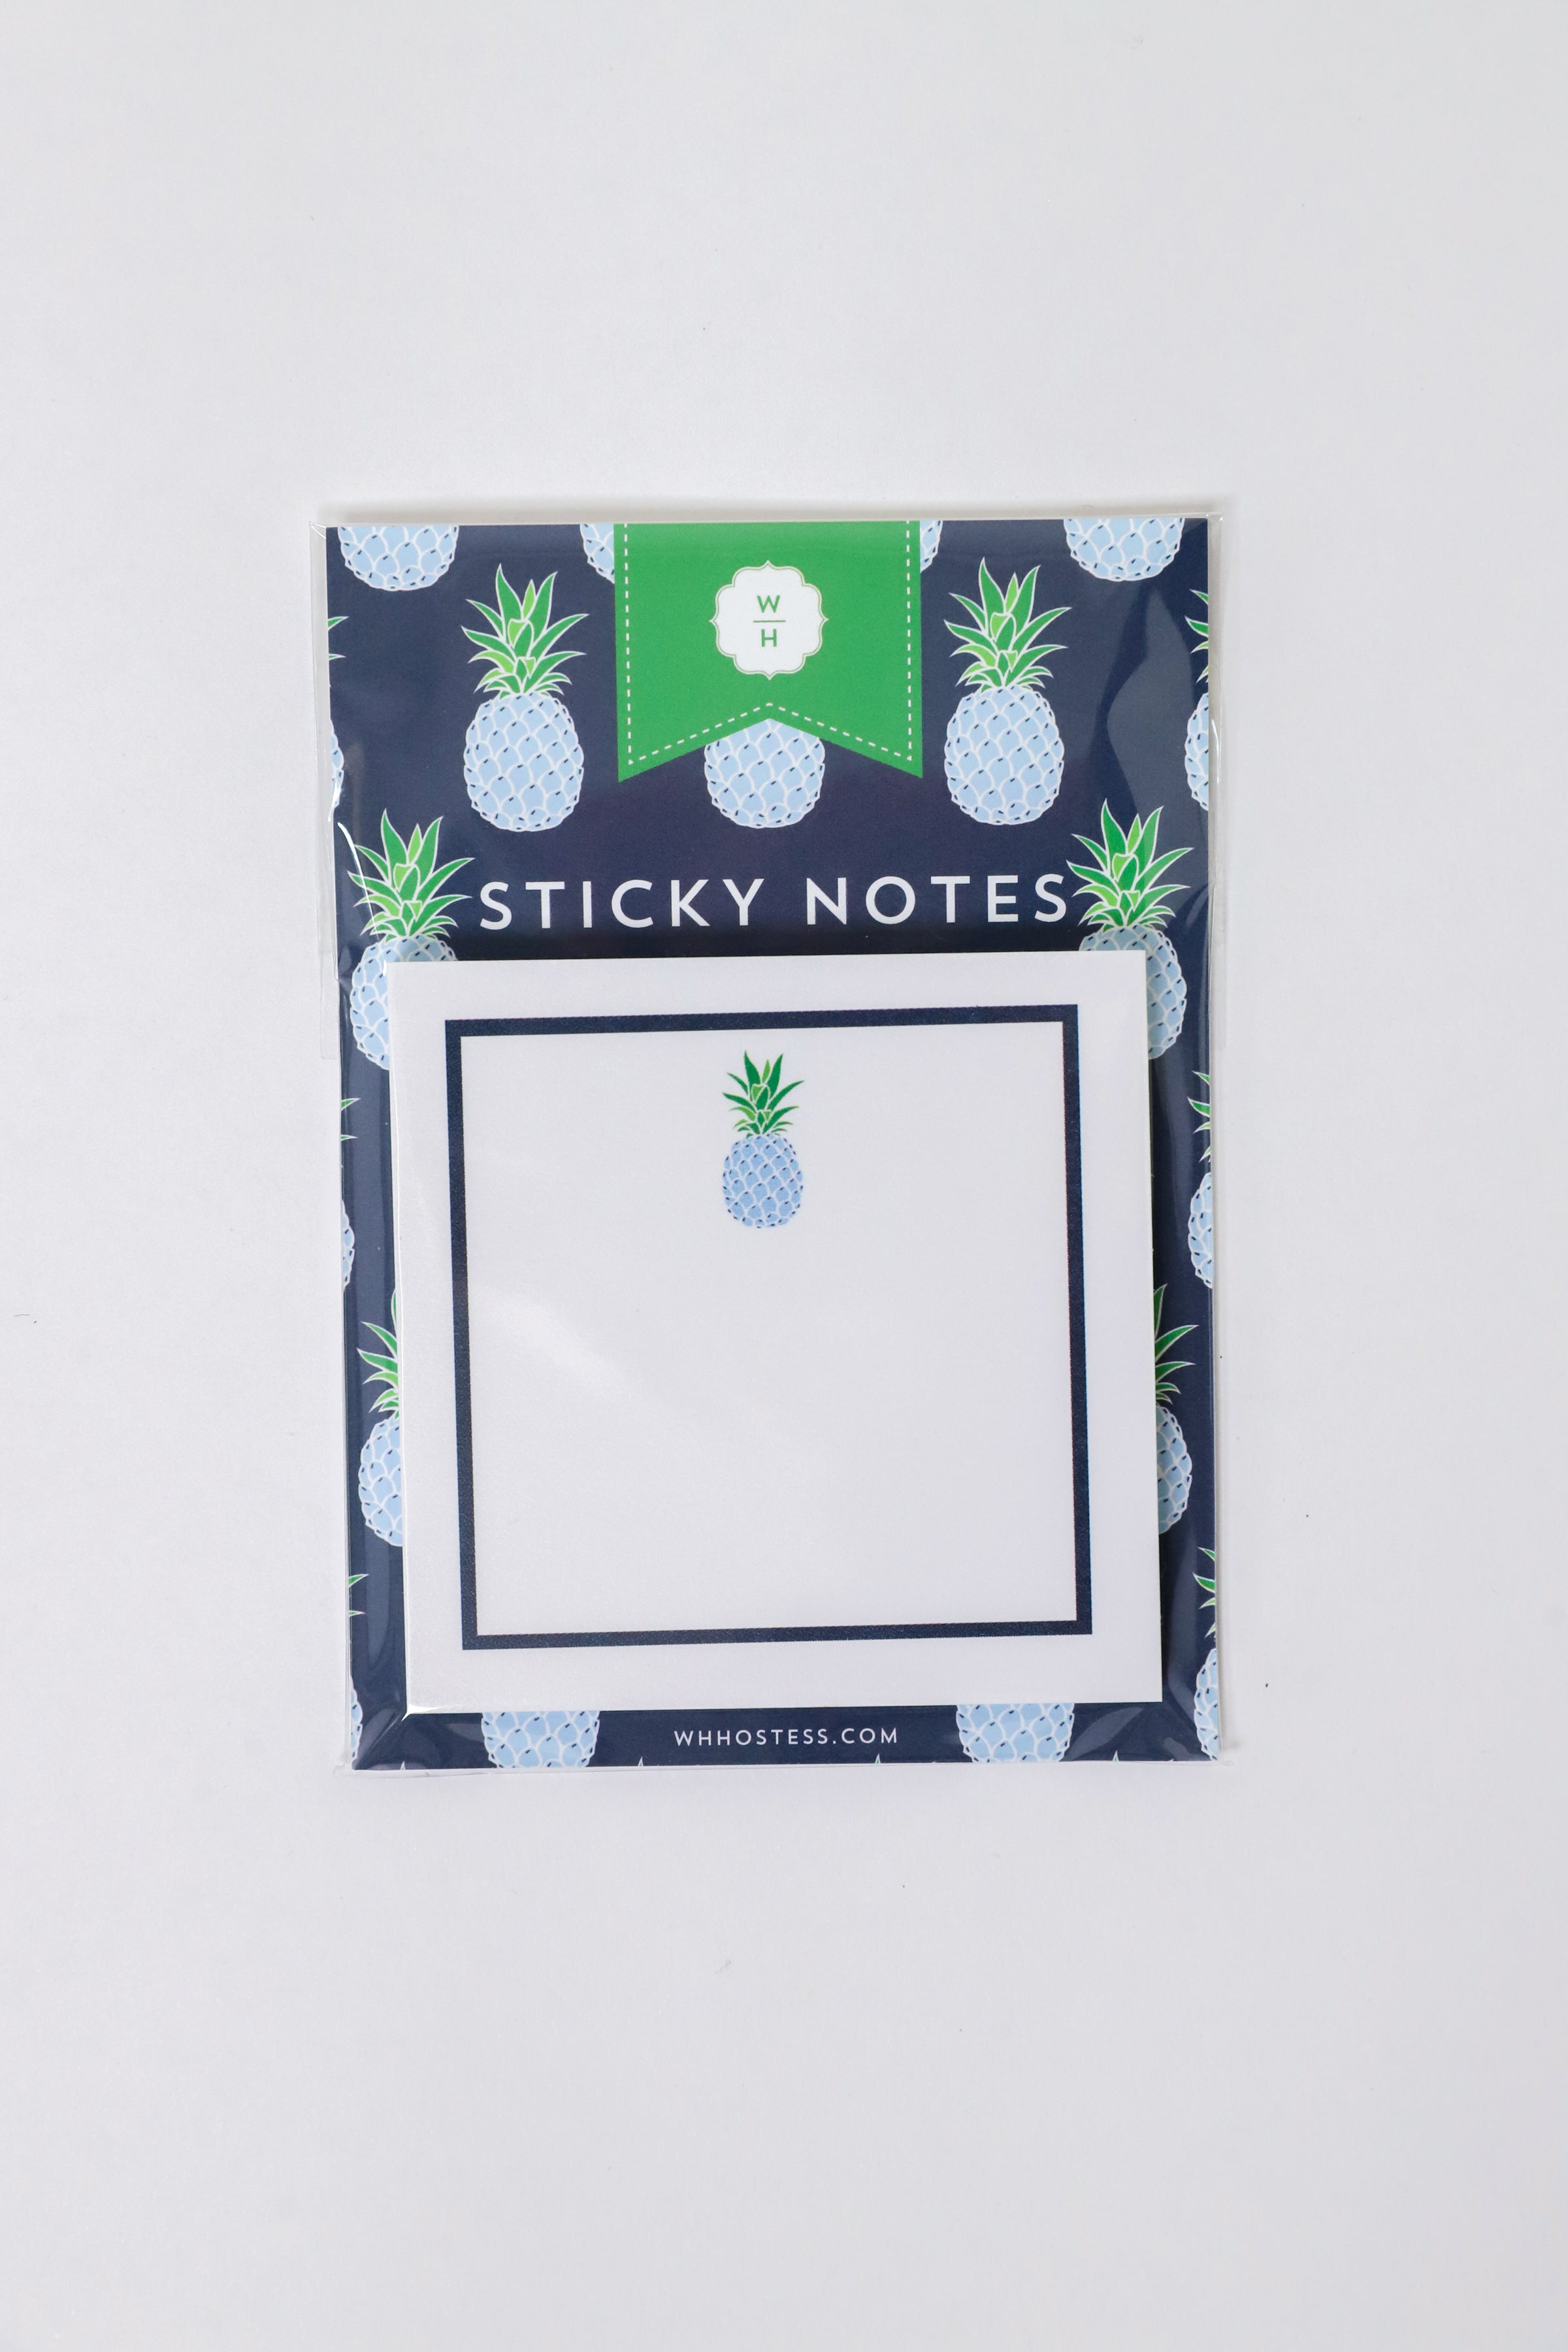 Sticky Notes